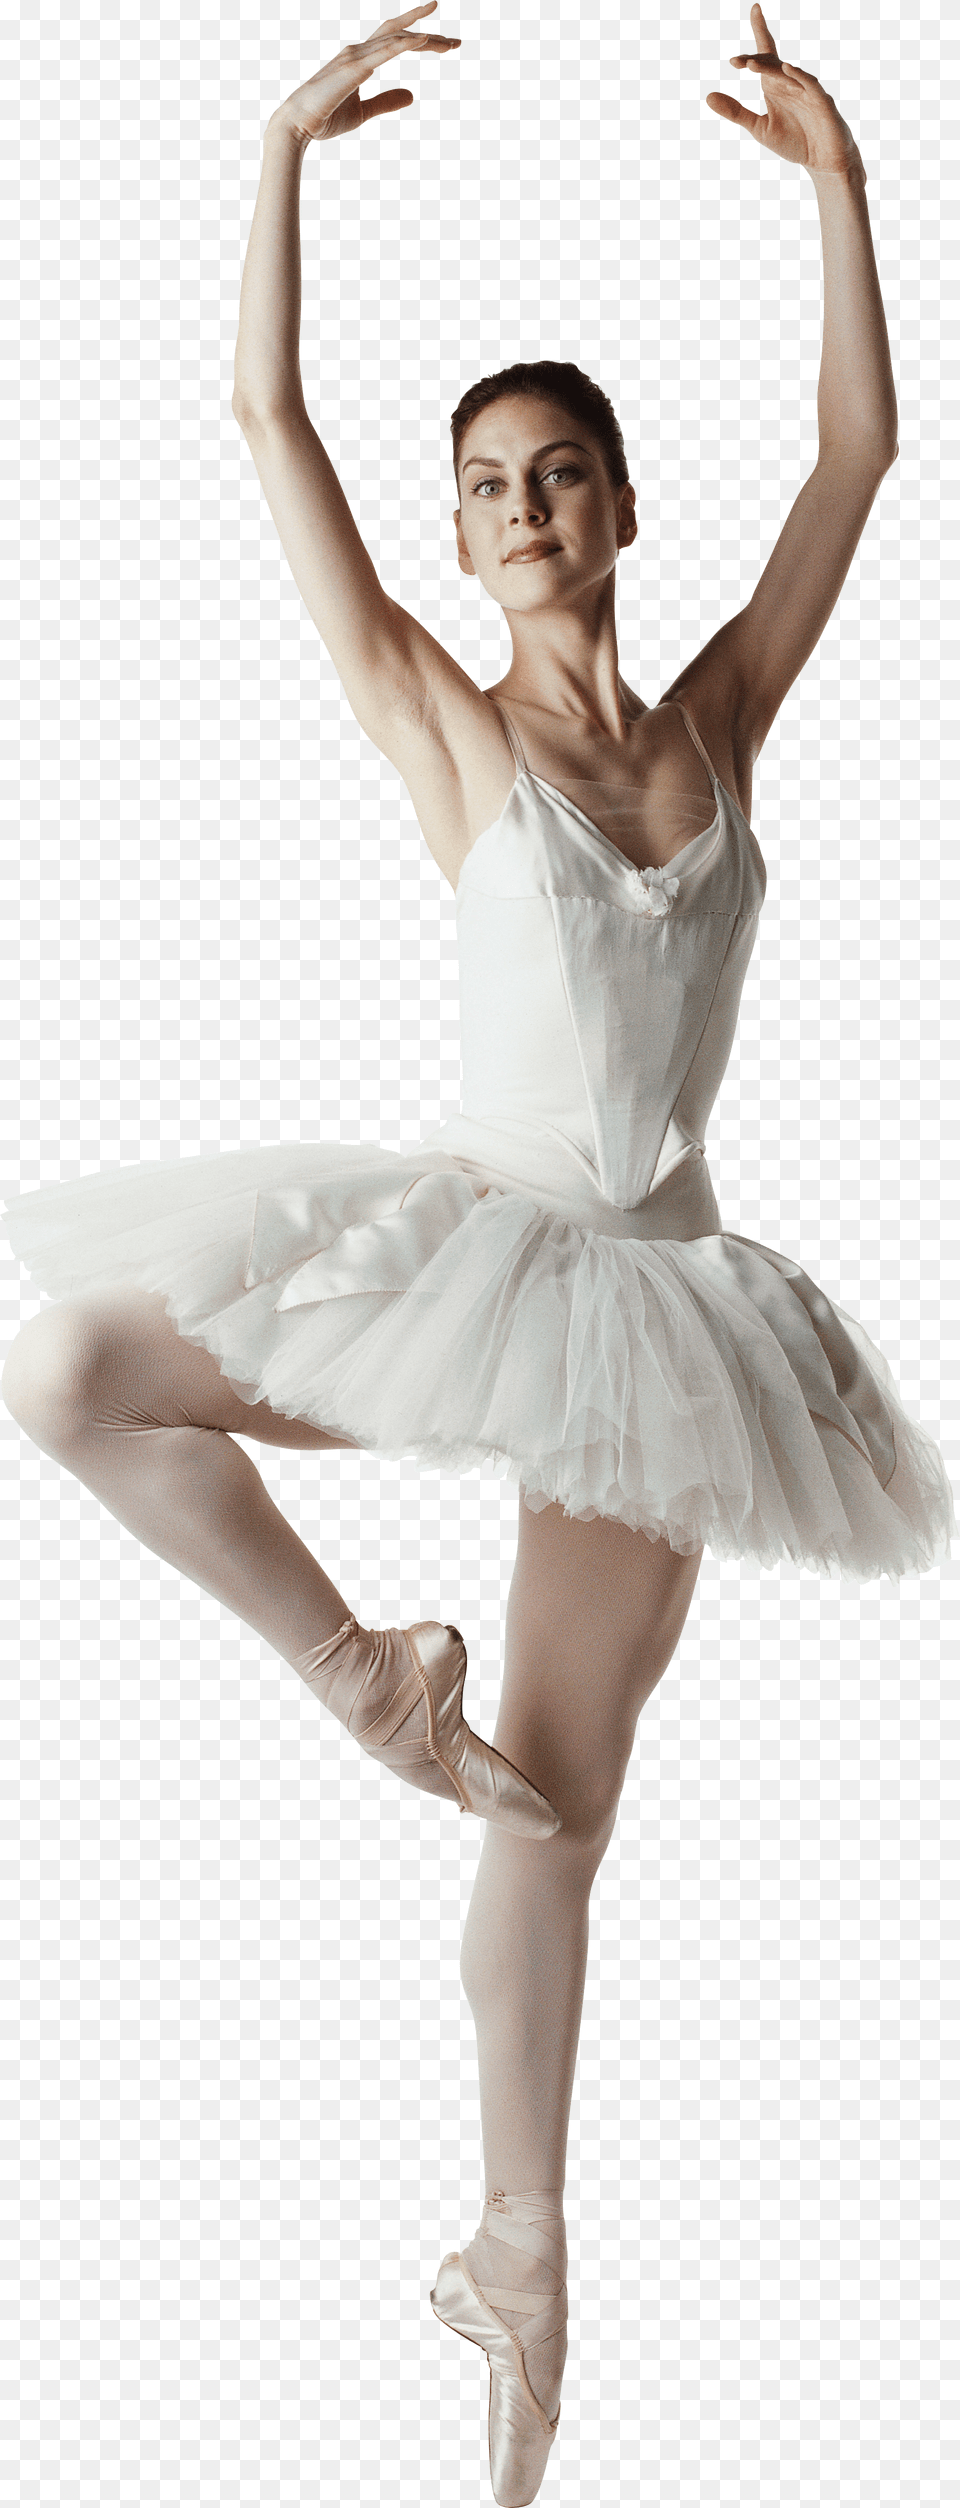 Ballet Dancer, Ballerina, Person, Dancing, Leisure Activities Png Image